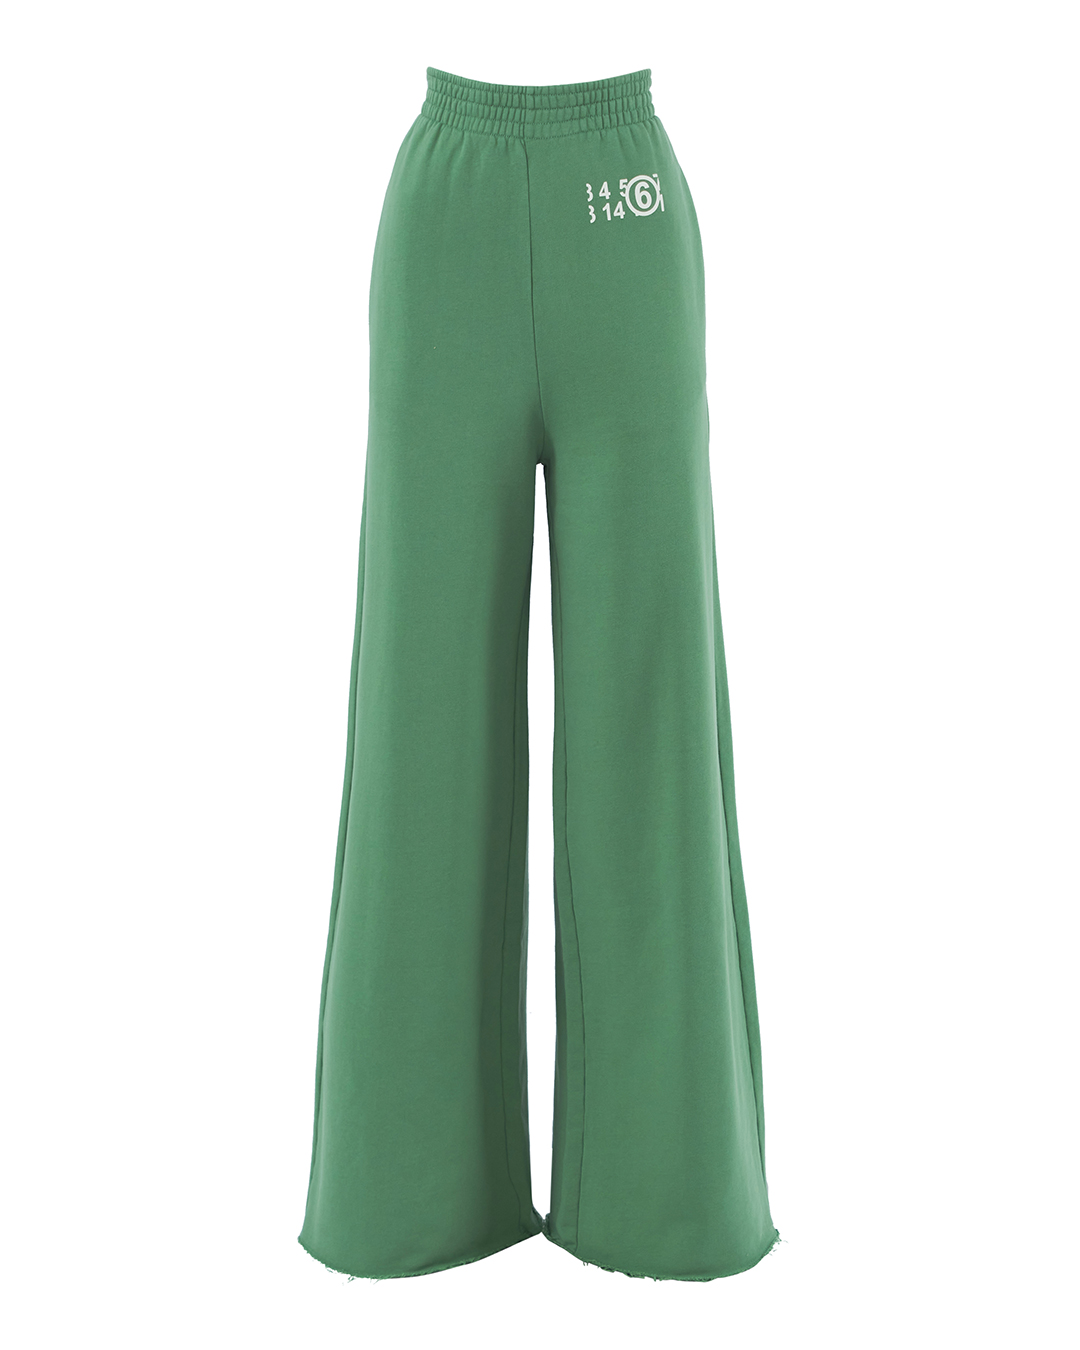 брюки MM6 Maison Margiela S52KA0392 зеленый+принт l, размер l, цвет зеленый+принт S52KA0392 зеленый+принт l - фото 1